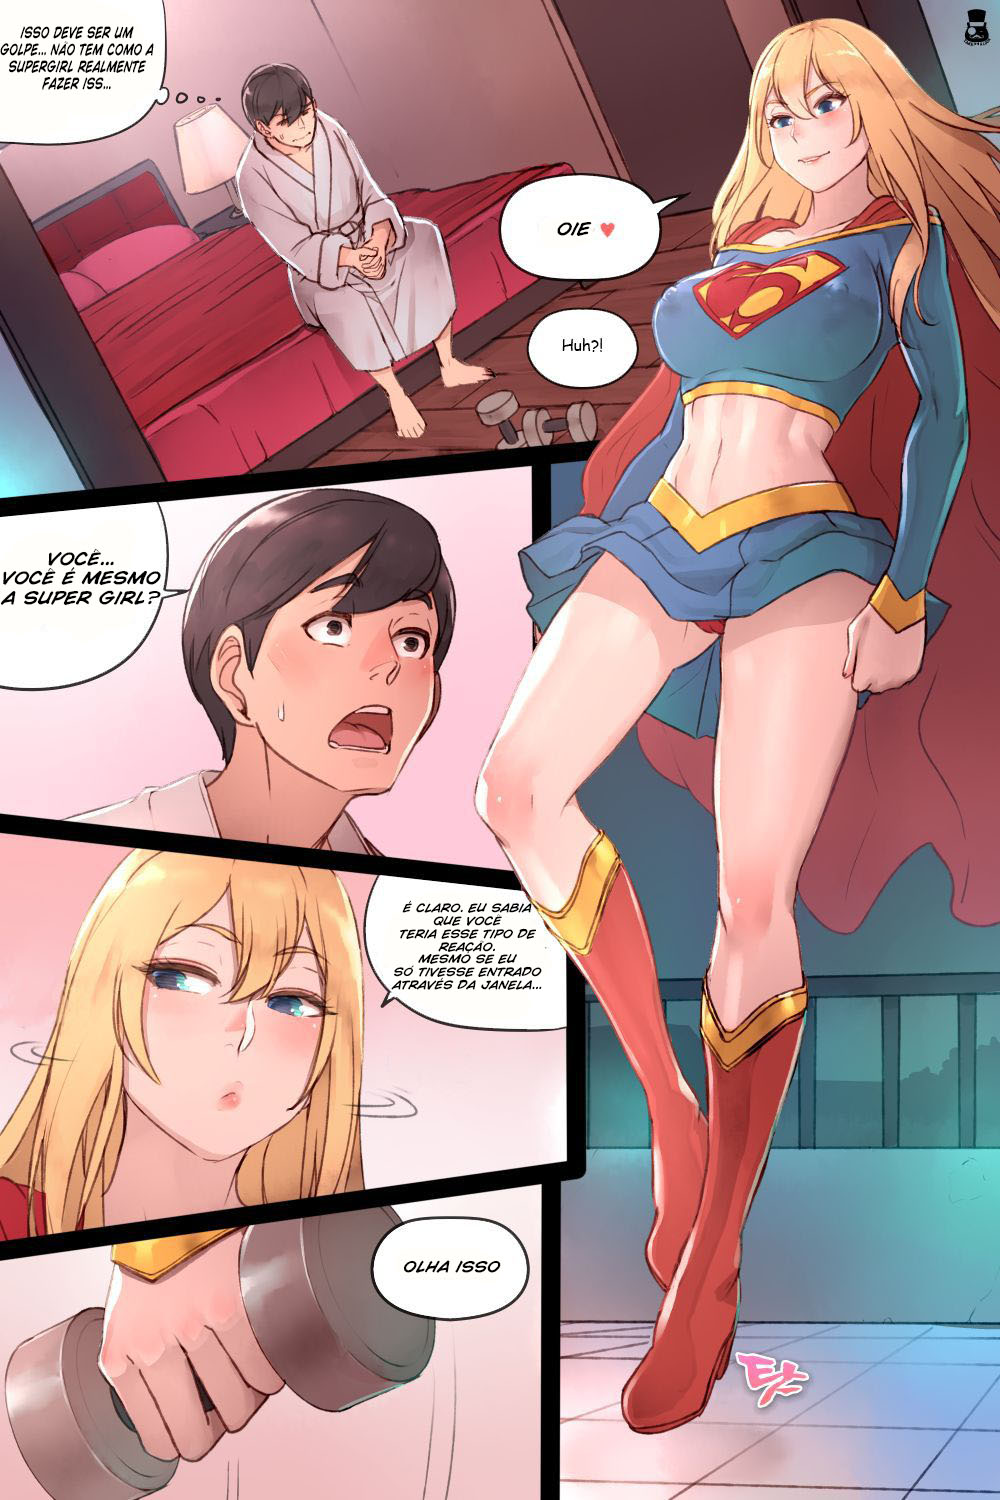 Supergirl's Secret Service